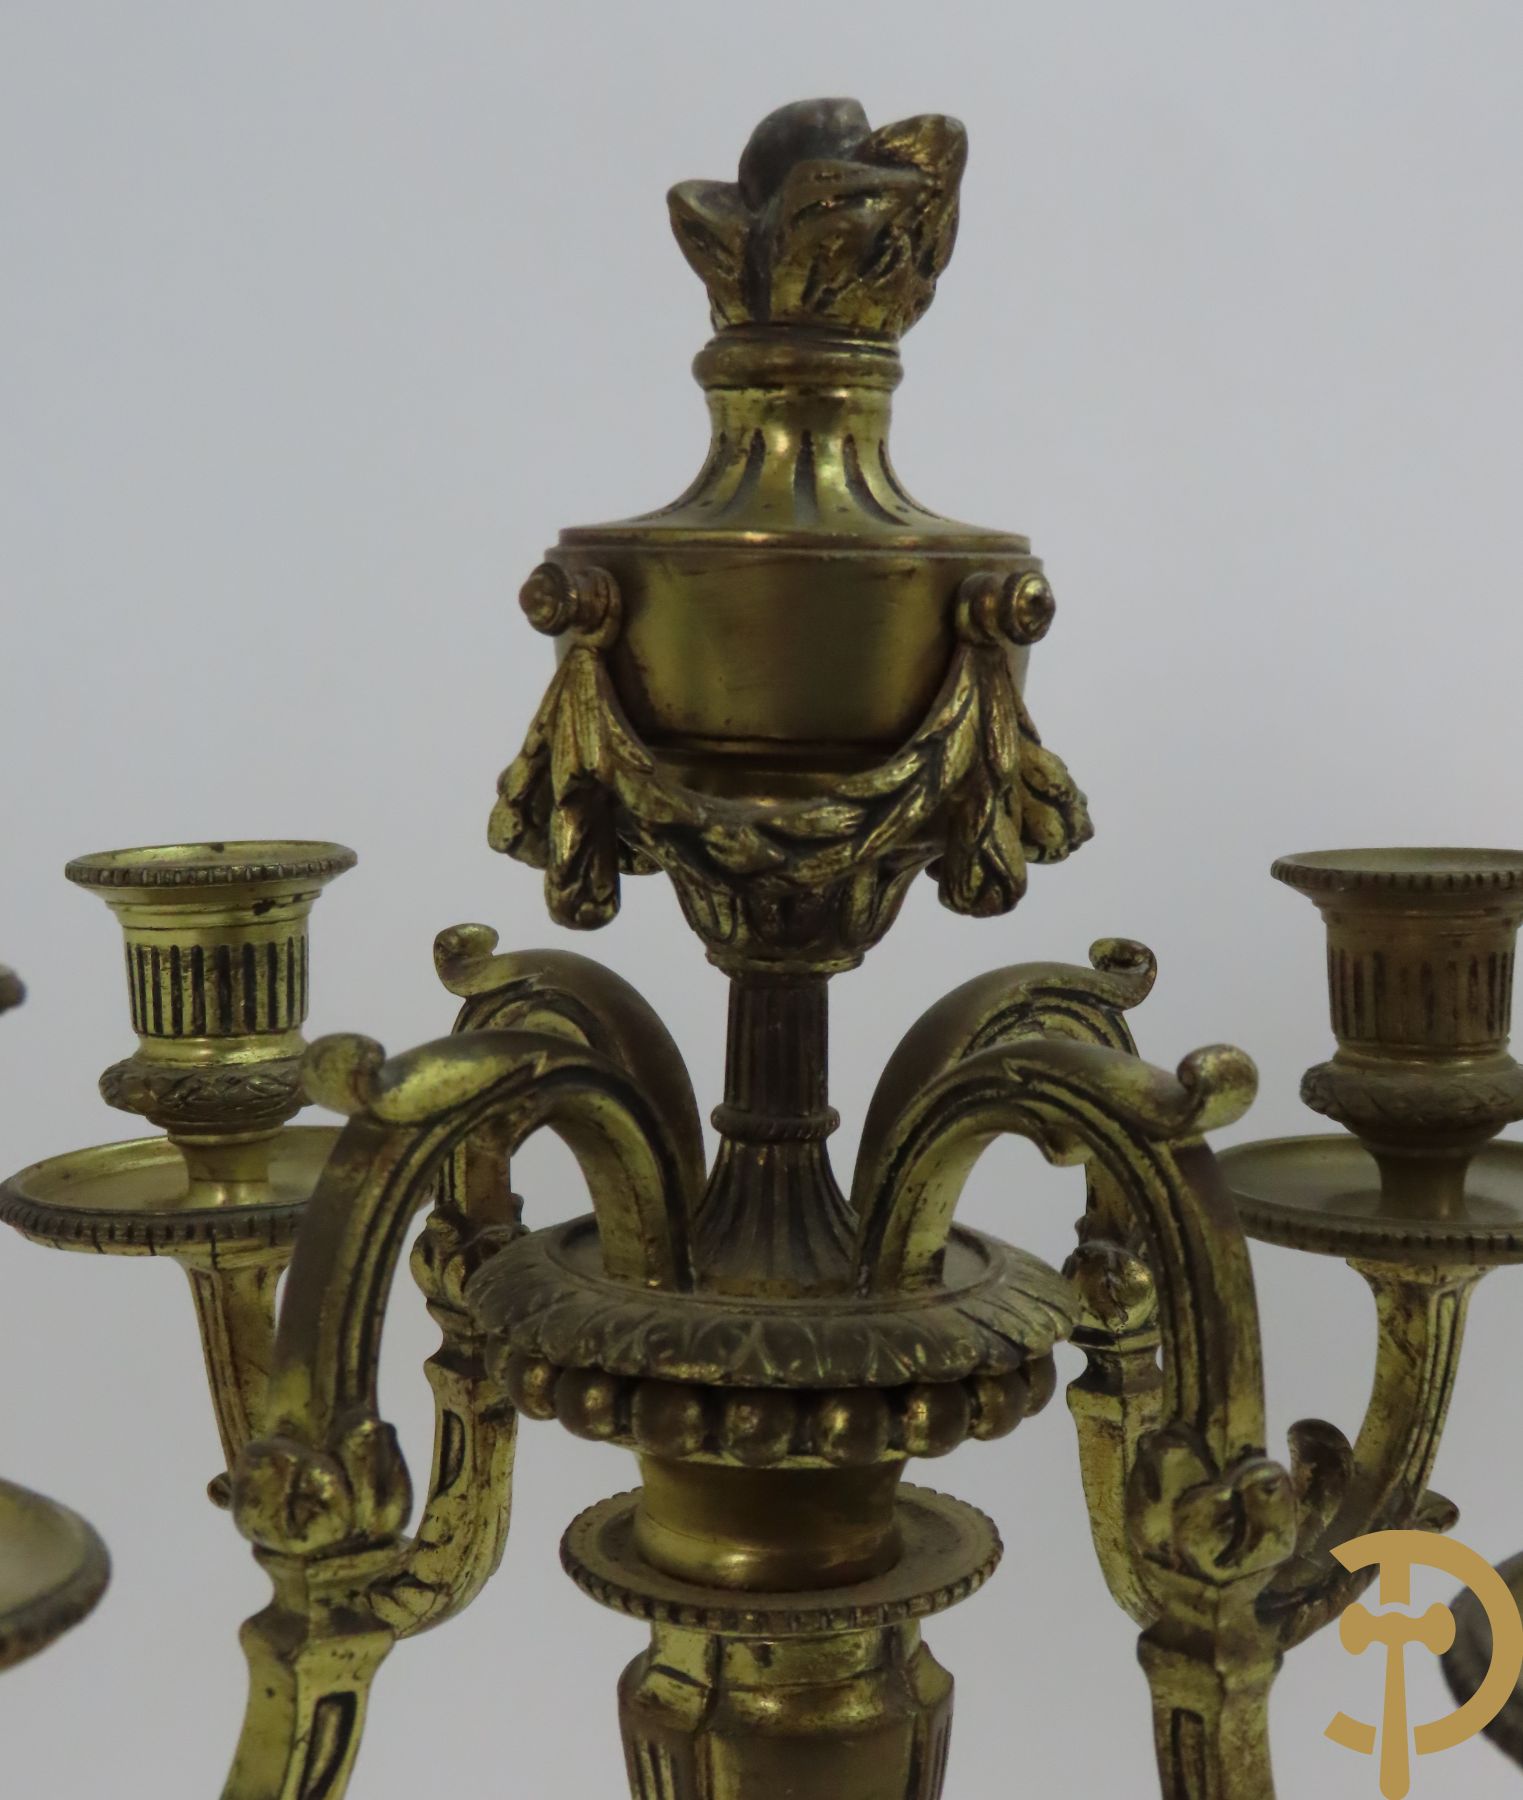 Paar bronzen Louis XVI vierarmige kandelaars bezet met toorts bovenaan